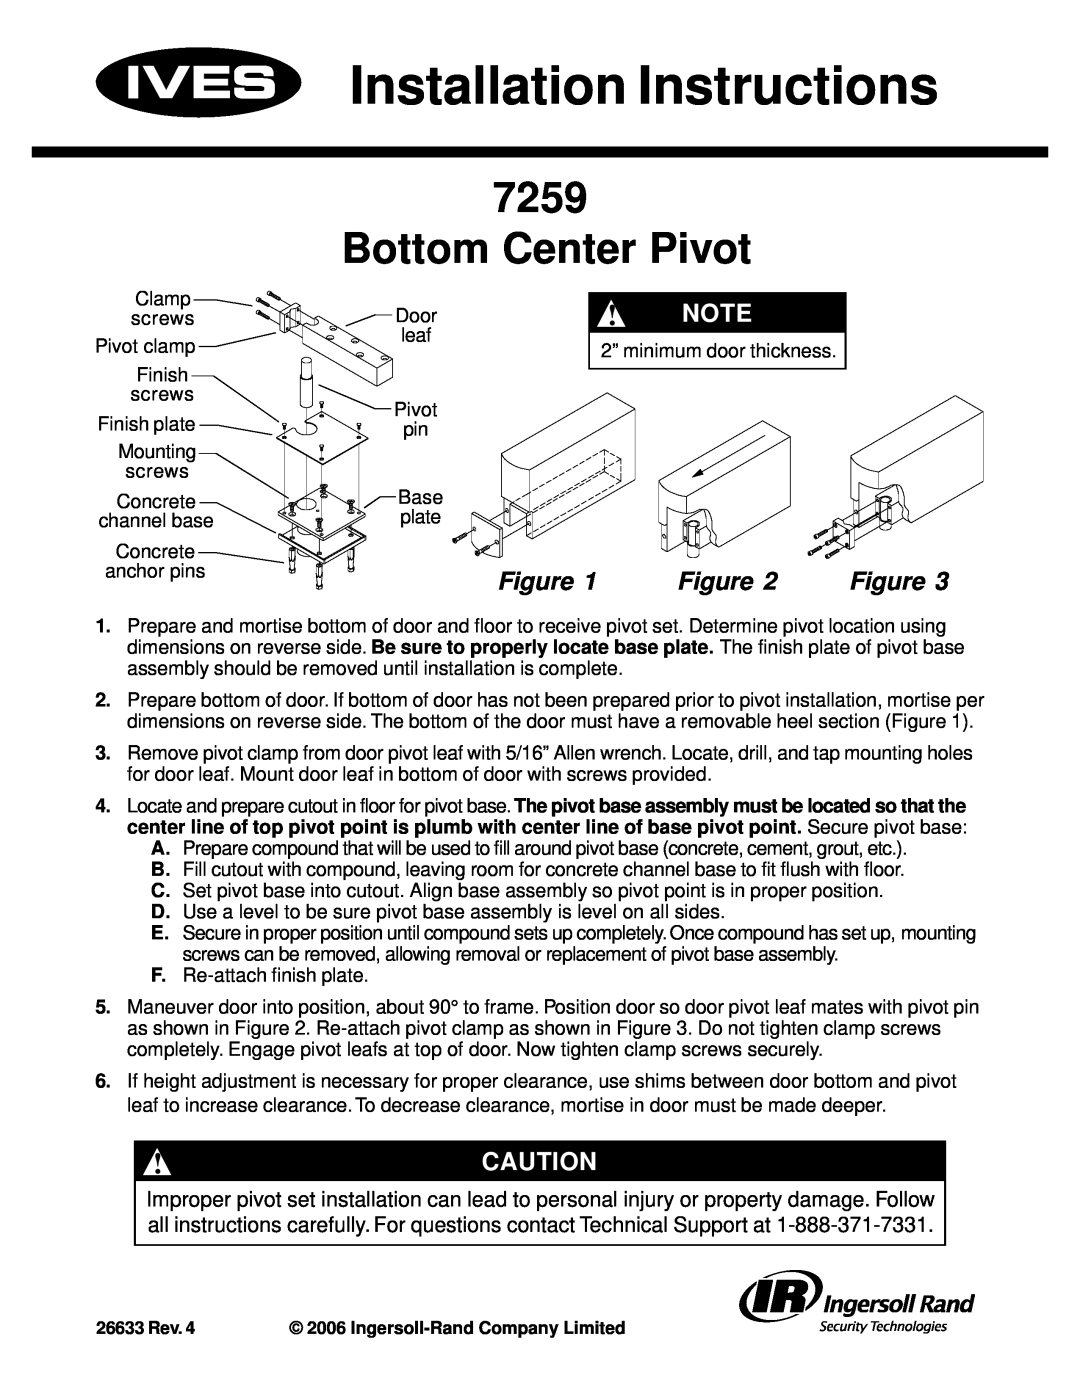 Ives 7259 installation instructions Installation Instructions, Bottom Center Pivot 